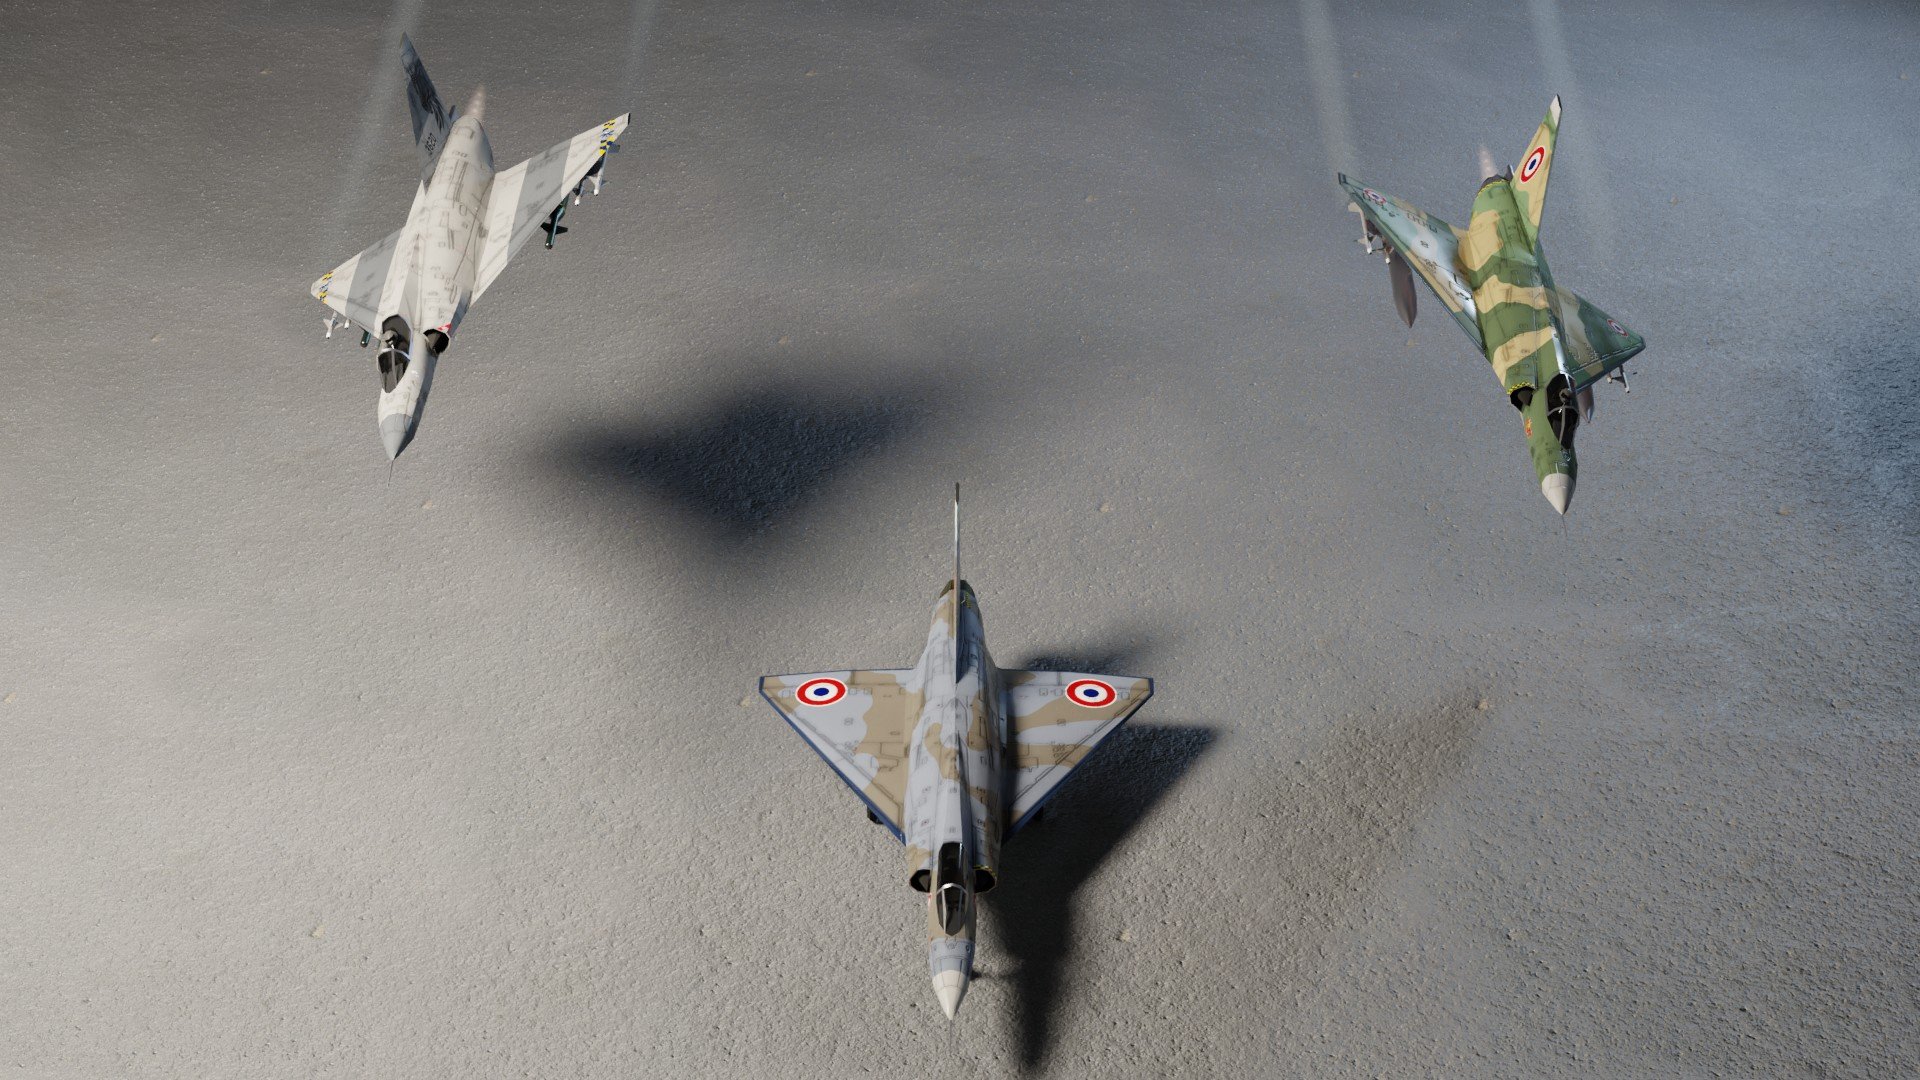 Dassault Mirage Iii Wallpapers